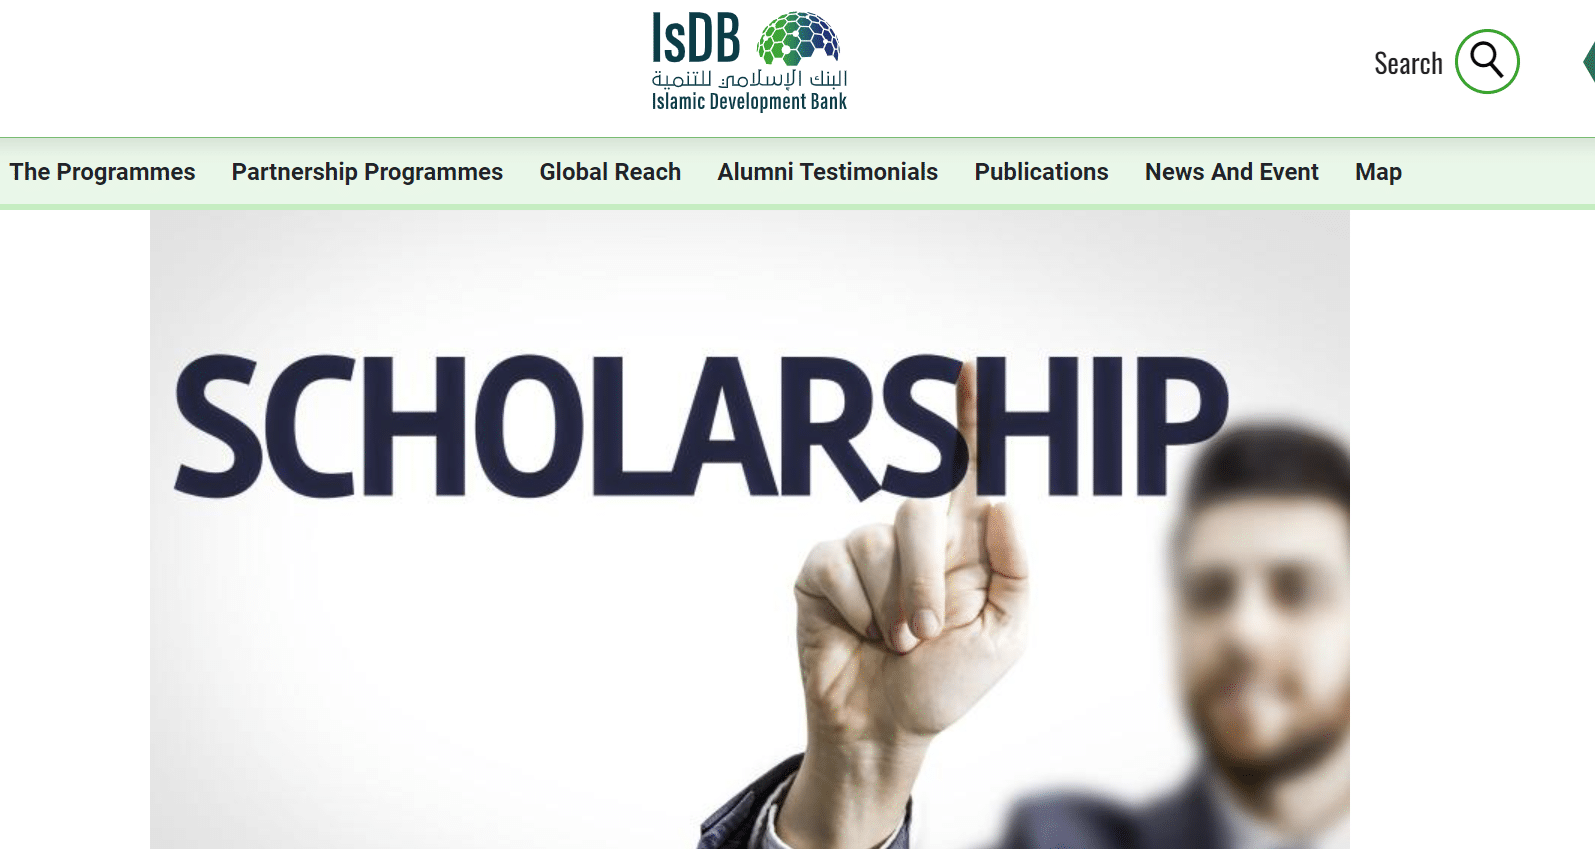 IsDB Scholarship Applications